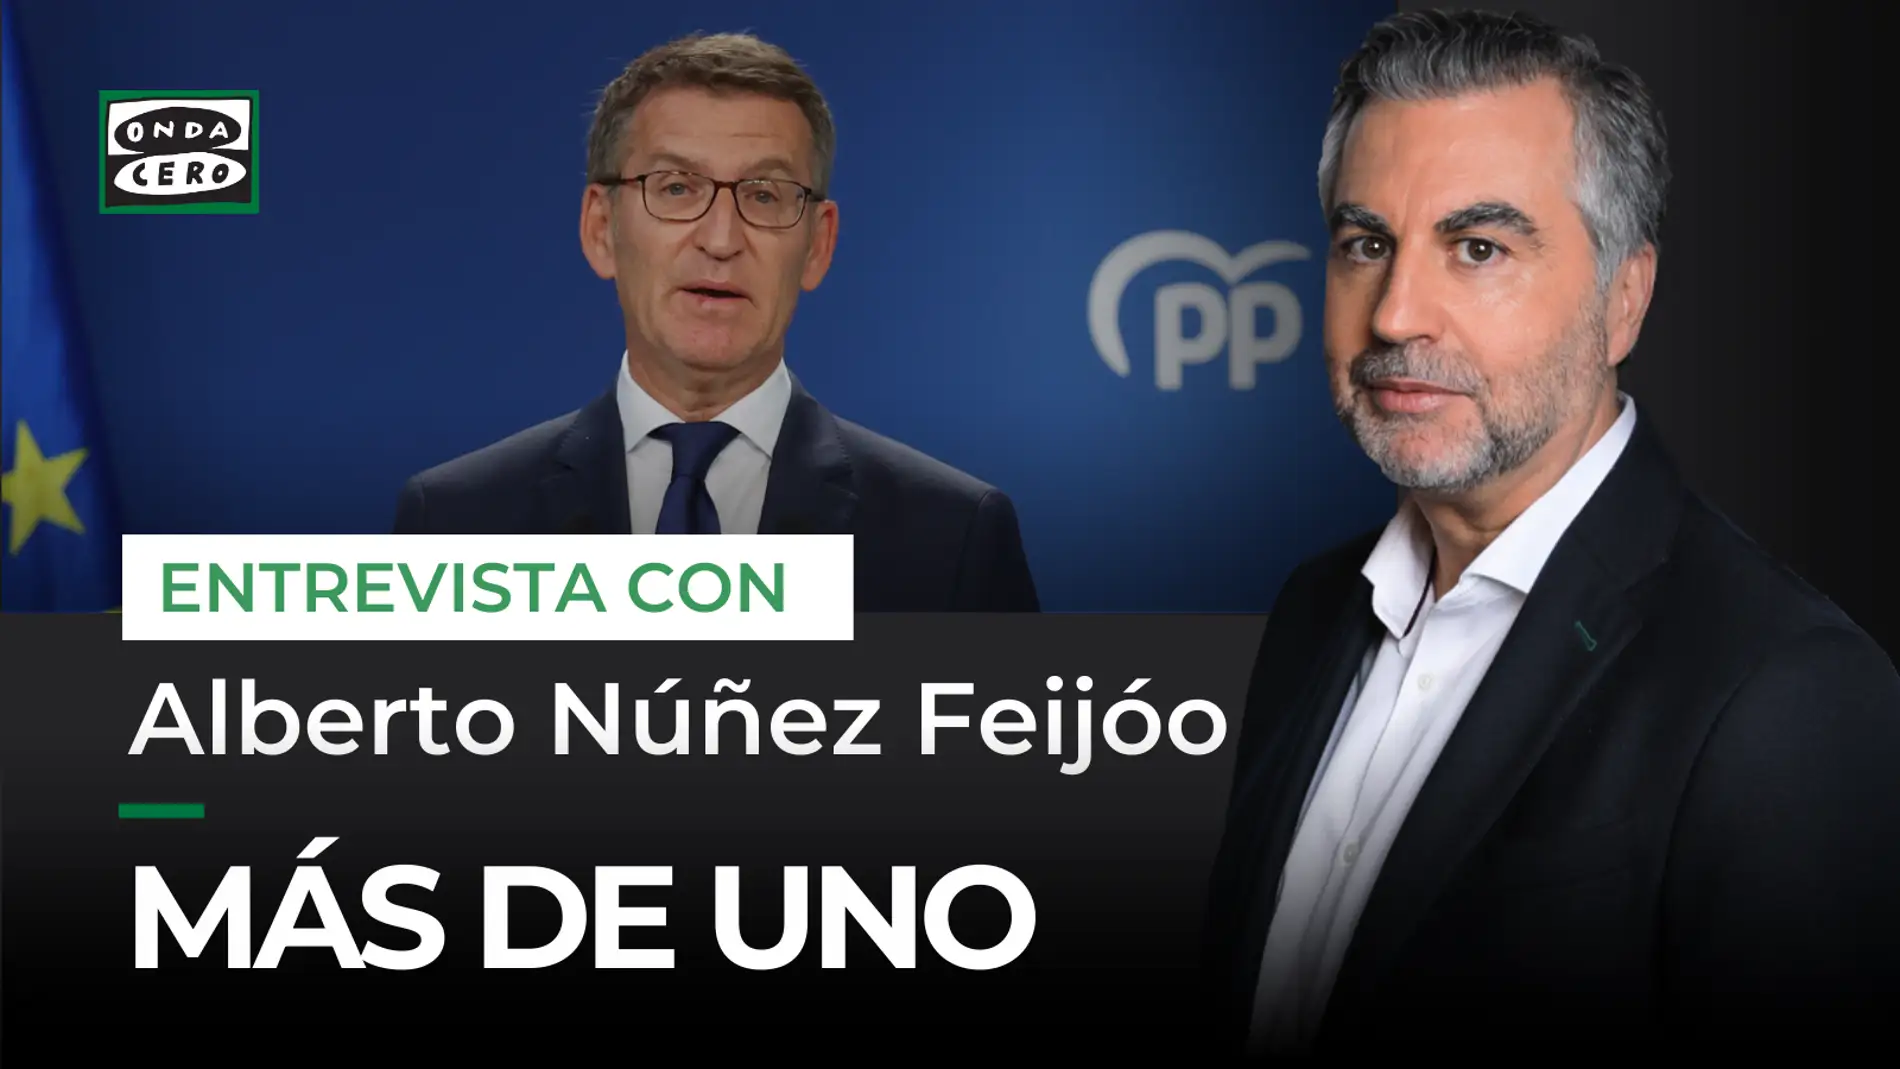 Carlos Alsina entrevista a Alberto Núñez Feijóo este martes en 'Más de uno'